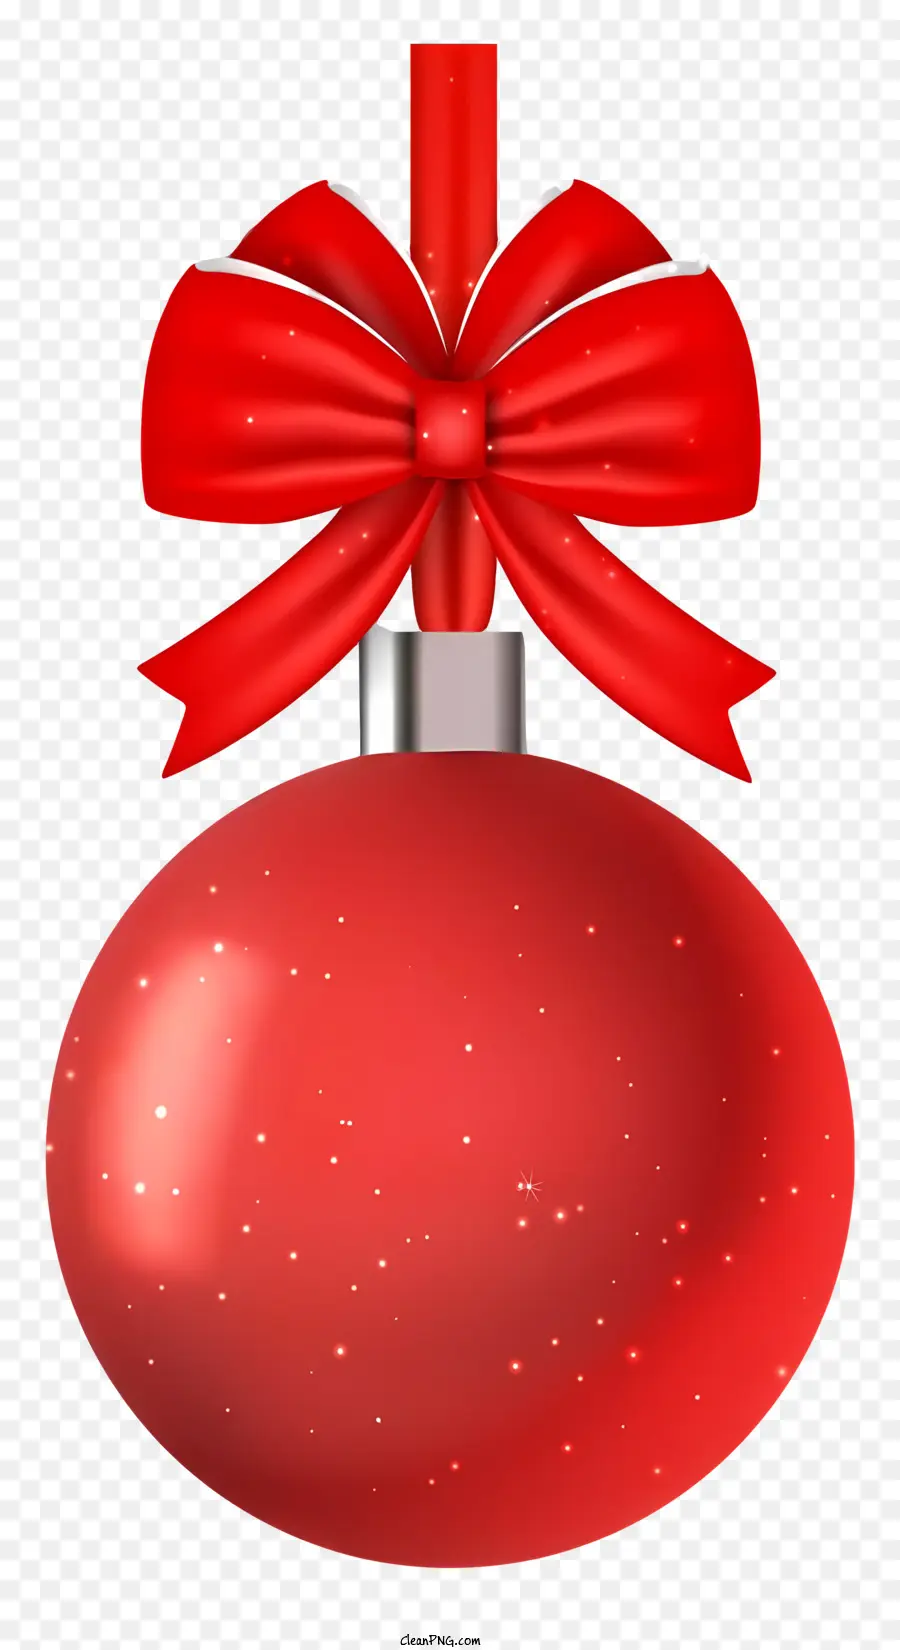 Rosso, ornamento di Natale - Palla di Natale rossa con nastro appeso su sfondo nero